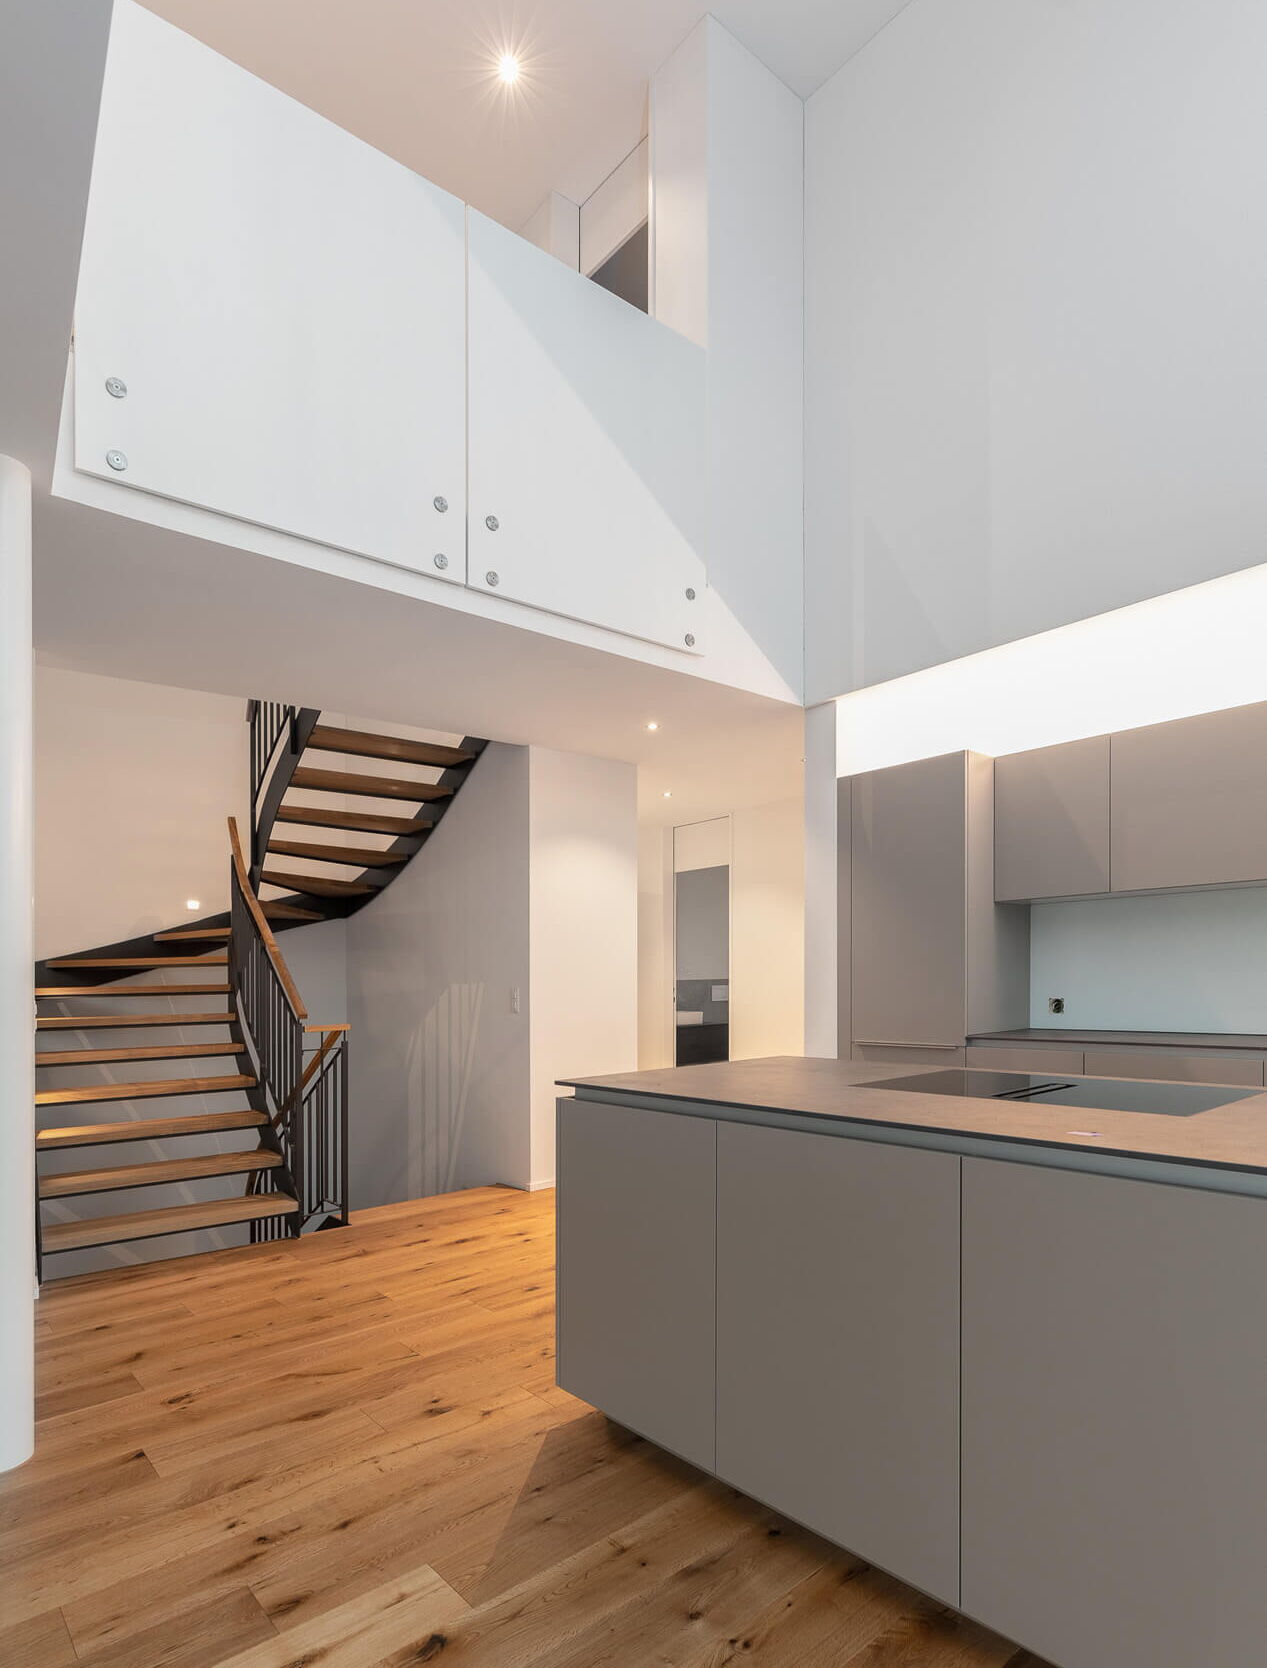 Immobilienfotografie Luzern: Wohnküche mit Treppe und Galerie